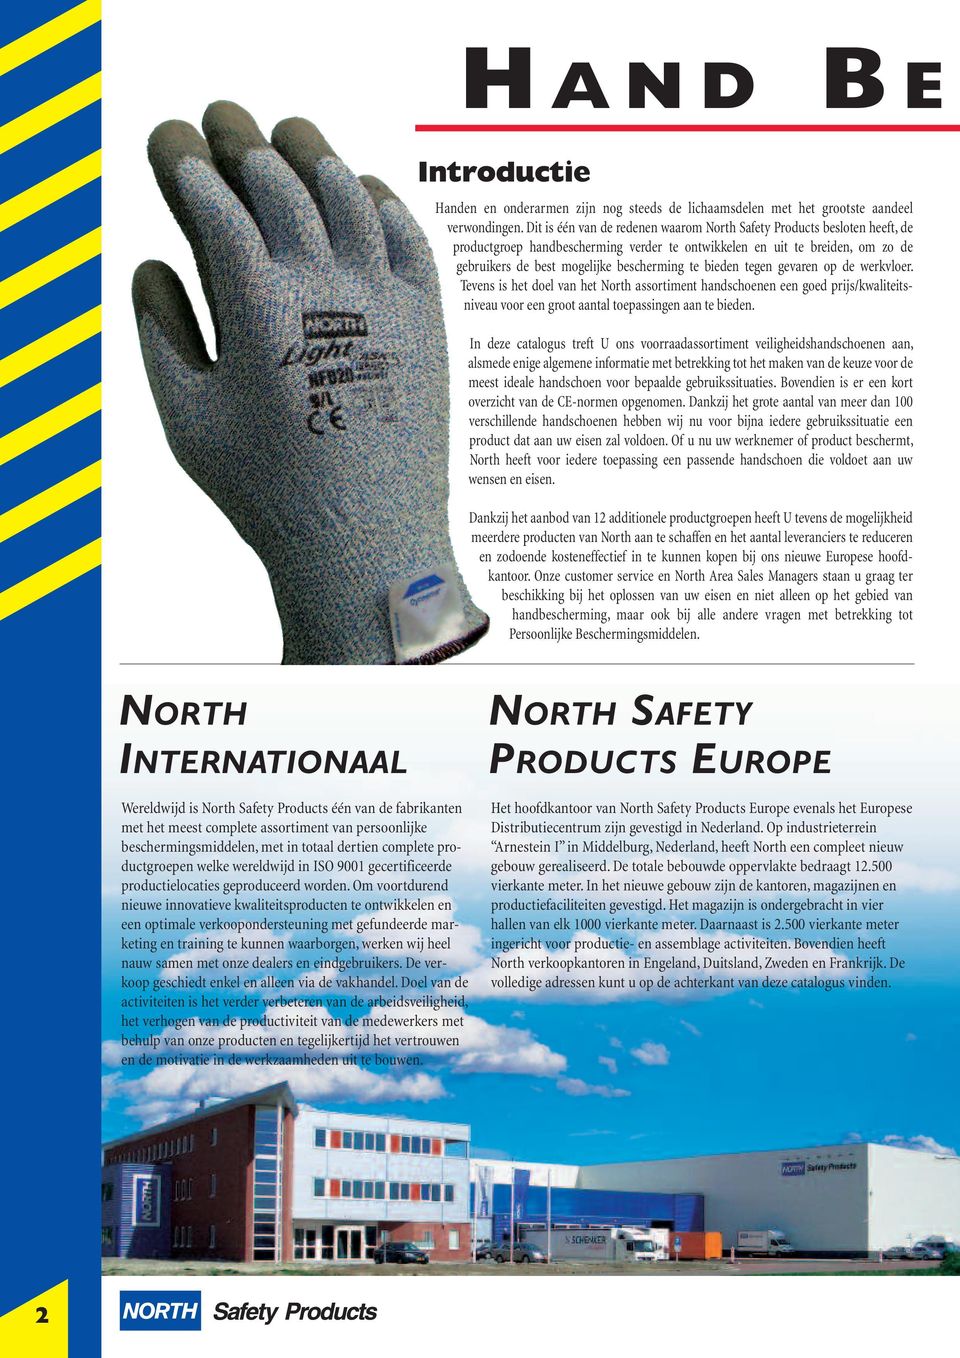 bieden tegen gevaren op de werkvloer. Tevens is het doel van het North assortiment handschoenen een goed prijs/kwaliteitsniveau voor een groot aantal toepassingen aan te bieden.